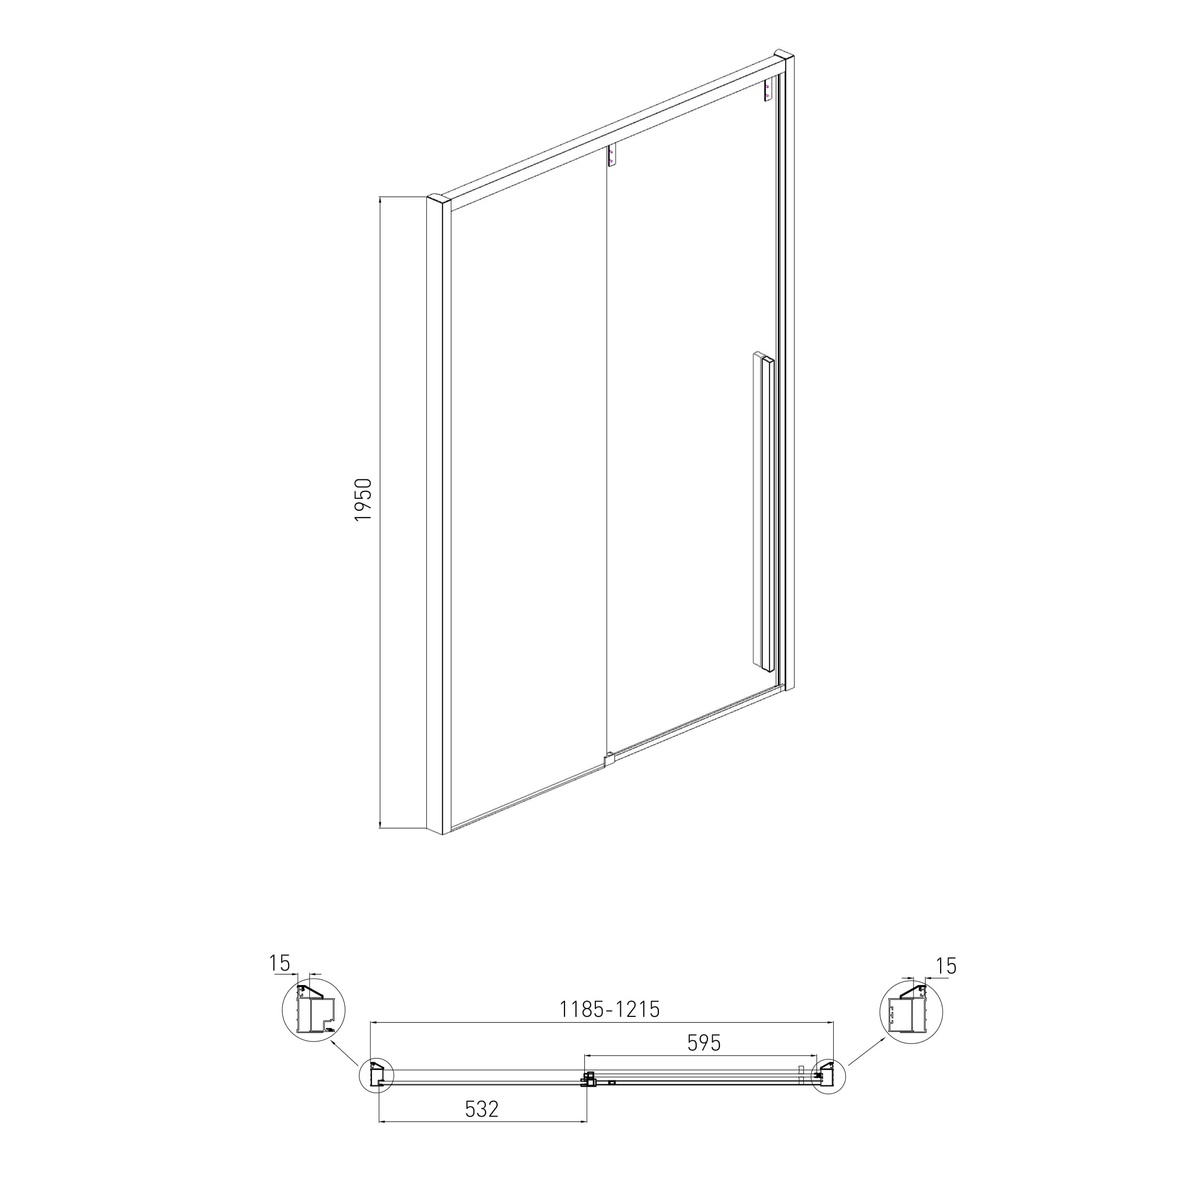 Дверь для душевой ниши VOLLE AIVA стеклянная раздвижная двухсекционная 195x120см прозрачная 6мм профиль хром 10-22-686